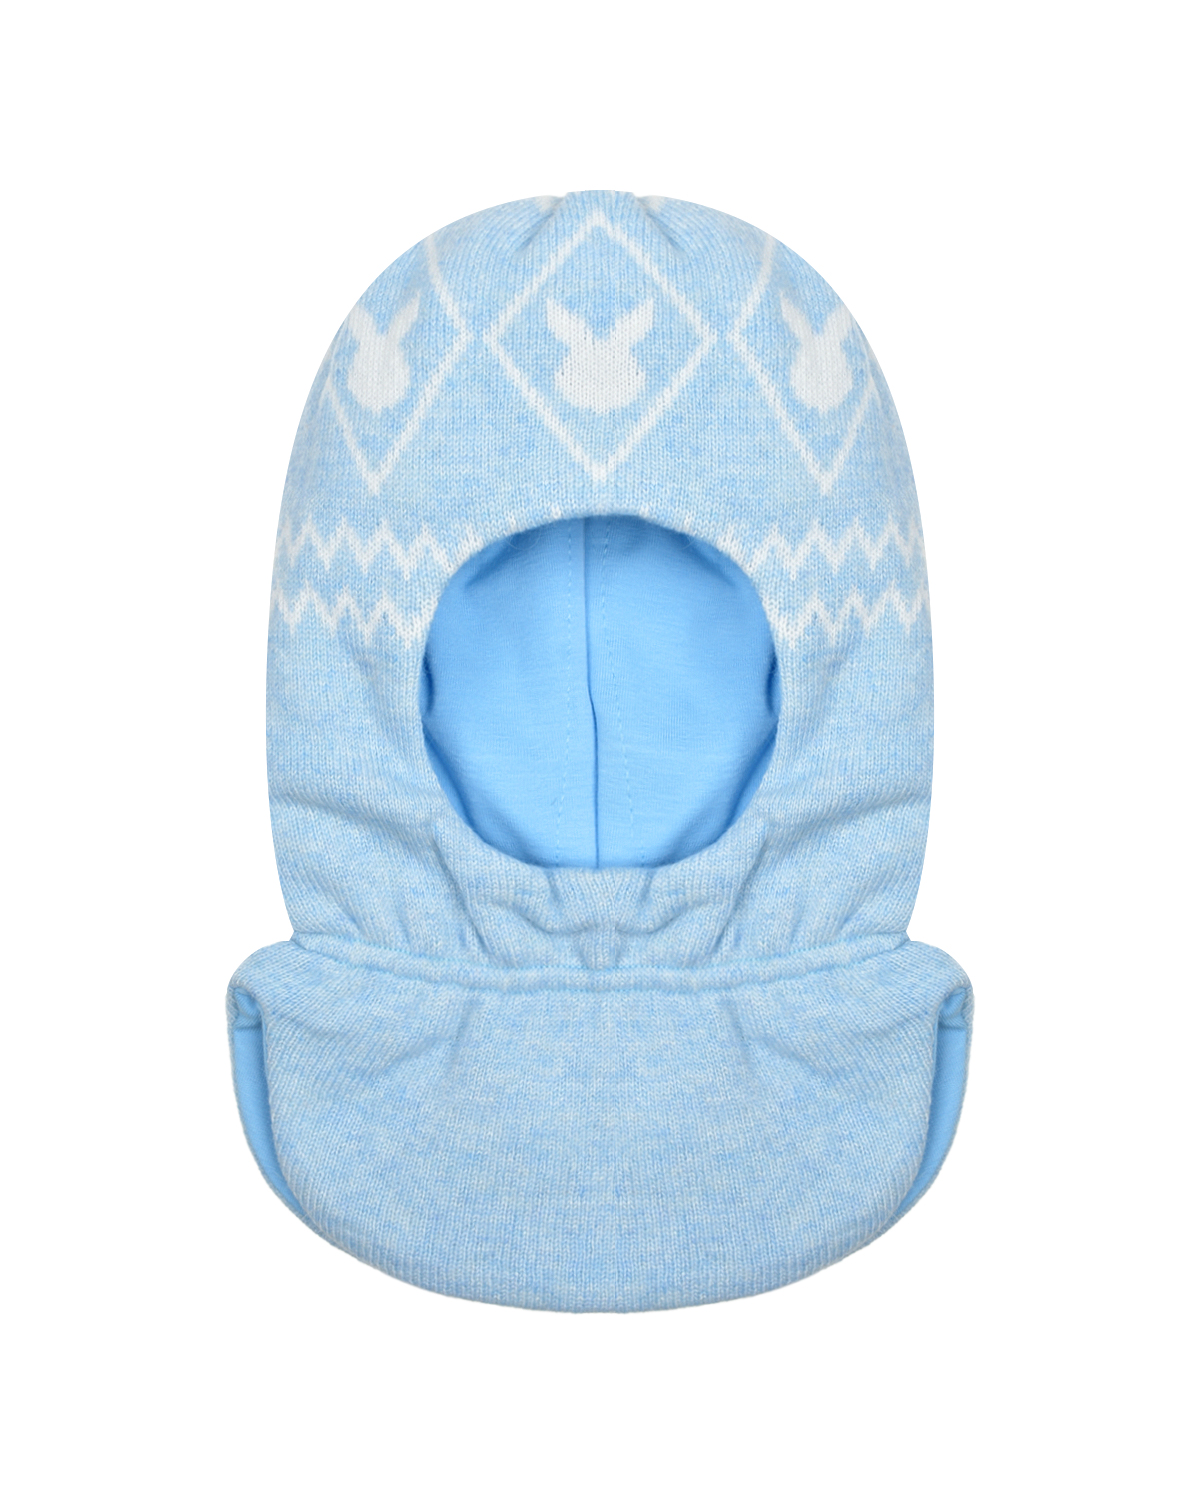 Голубая шапка-шлем с принтом "белые зайцы" Chobi детская, размер 45, цвет голубой - фото 1